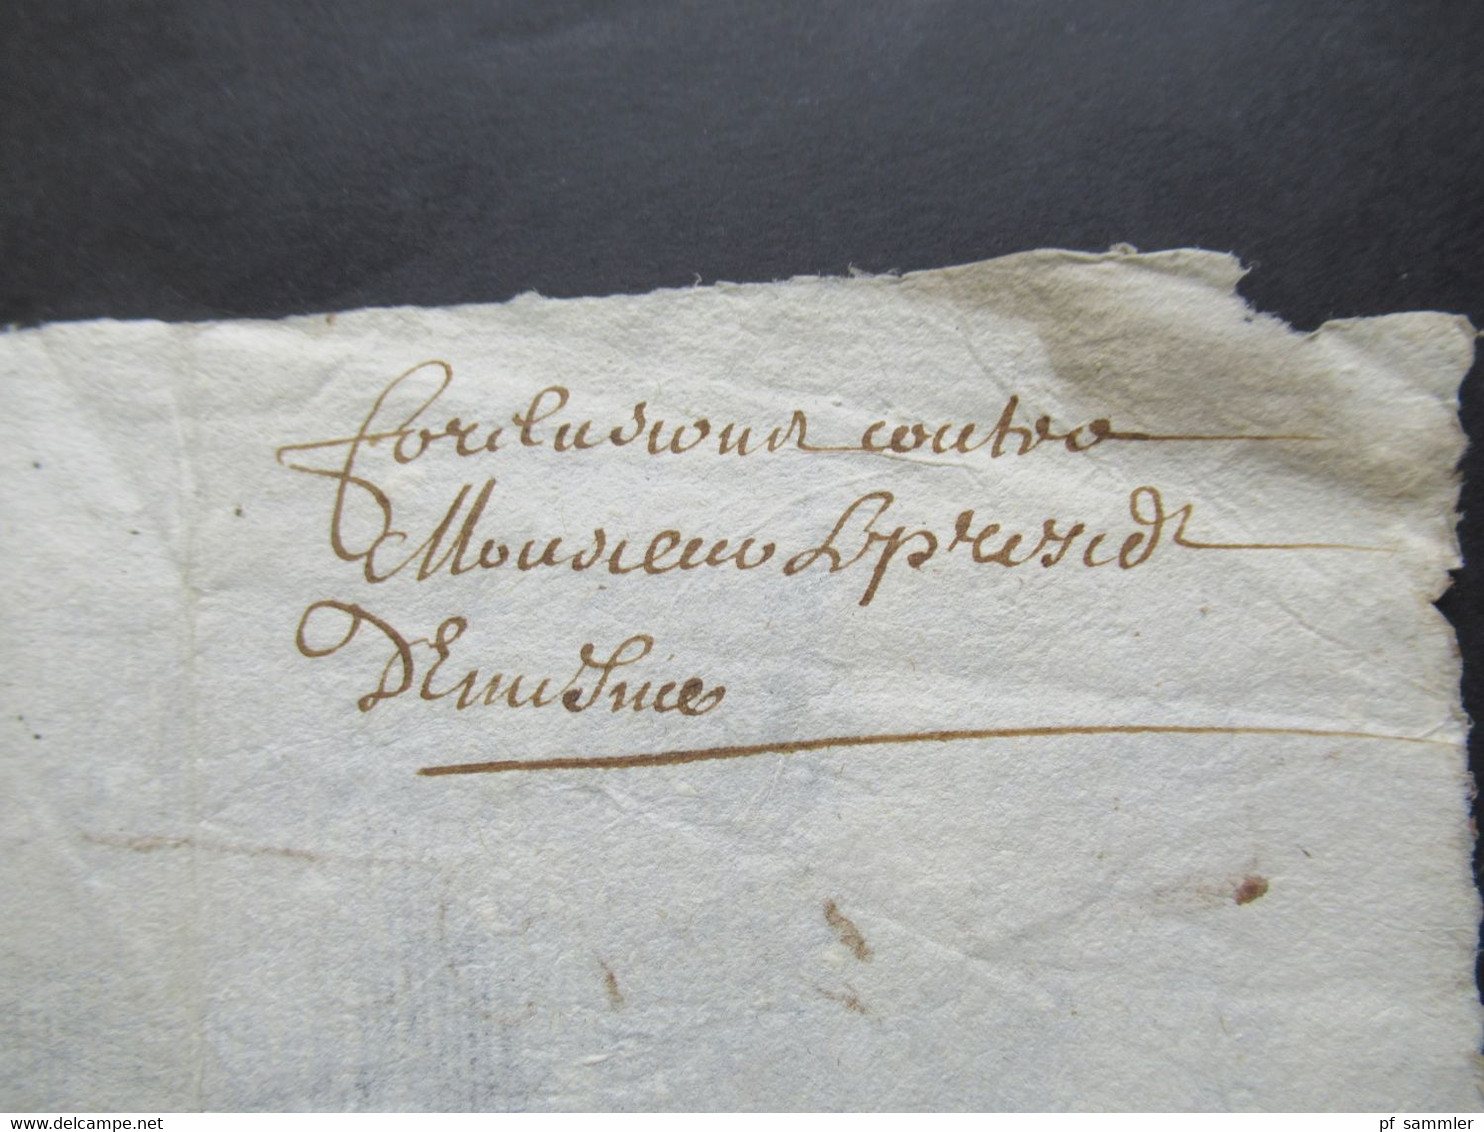 Frankreich 17. Jahrhundert 1645 Brief / Inhalt / tolles Dokument mit mehreren / verschiedenen Unterschriften